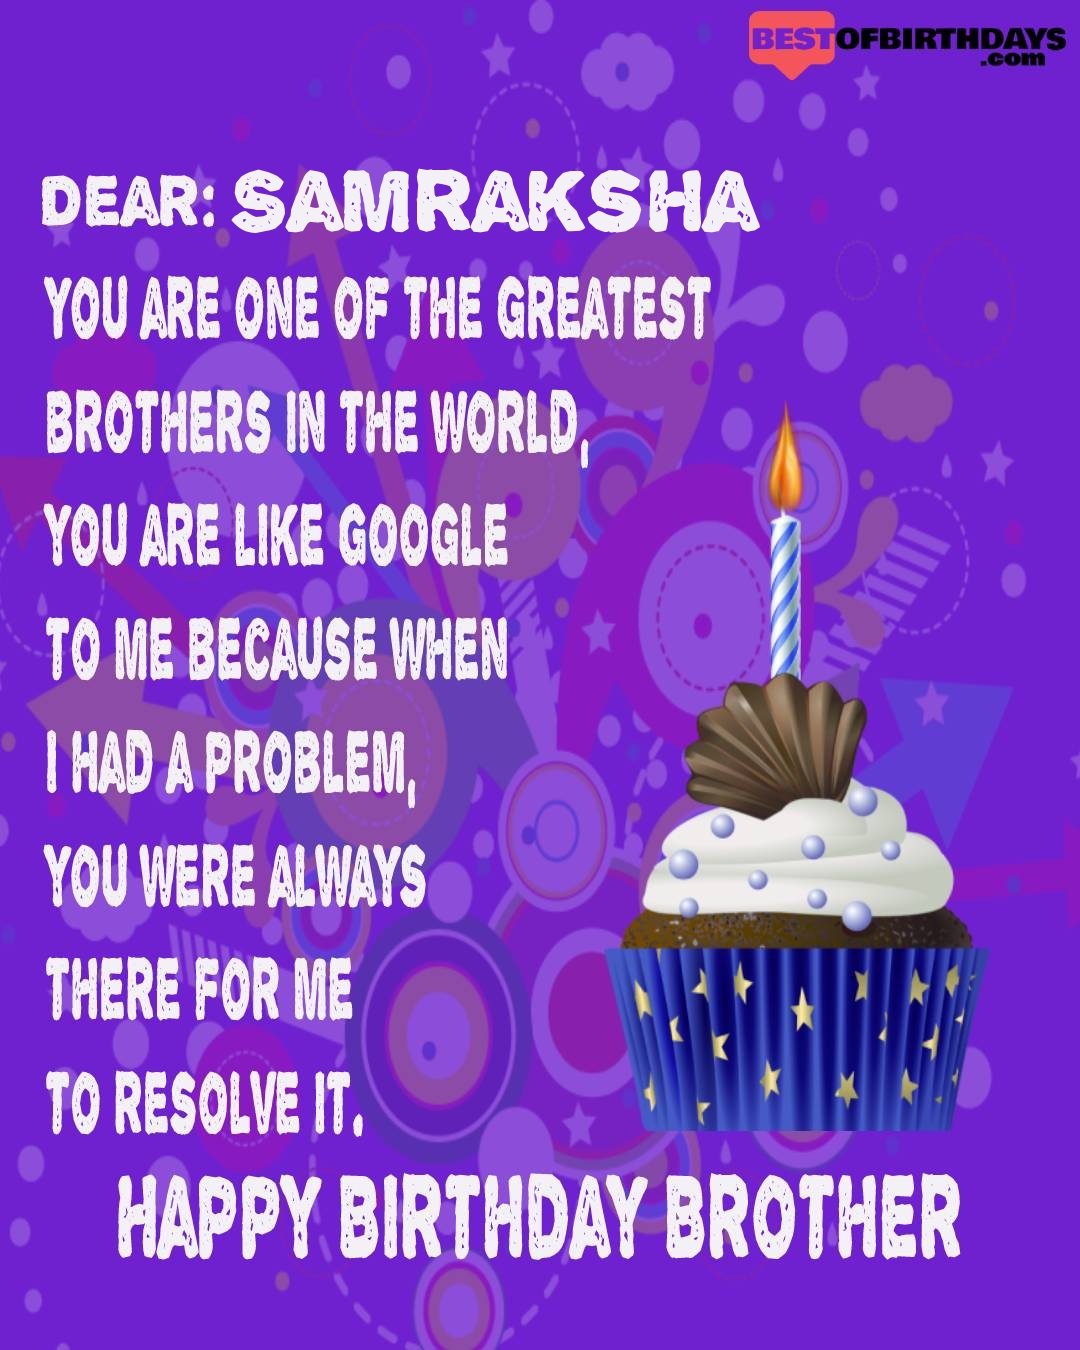 Happy birthday samraksha bhai brother bro